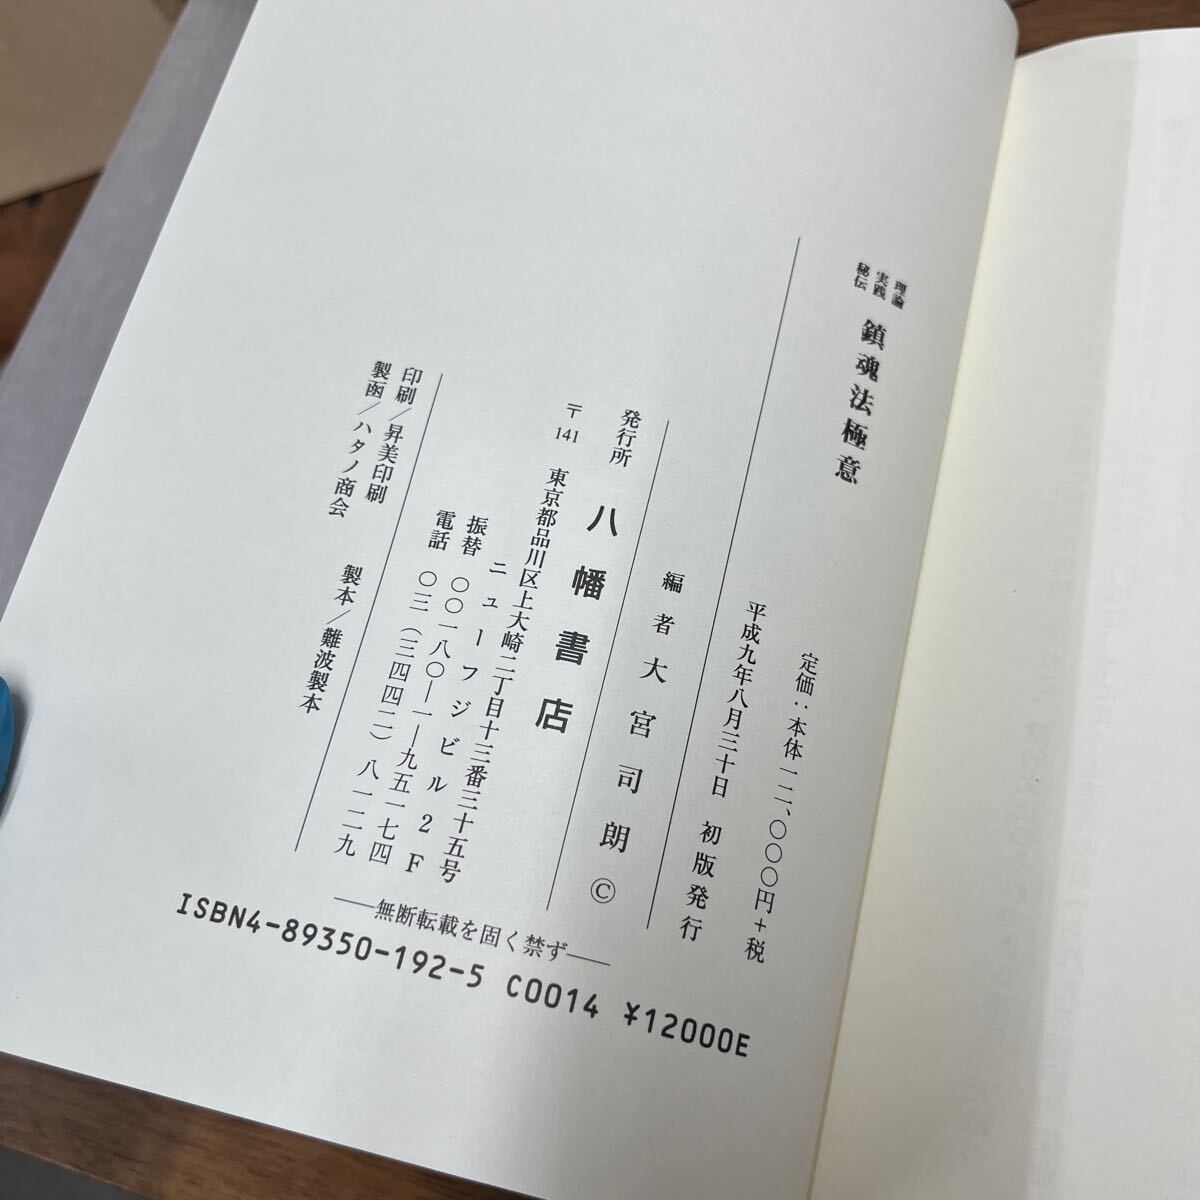 M-1132*60 размер теория практика ... душа закон высшее смысл Omiya .. сборник Hachiman книжный магазин Omiya .. эпоха Heisei 9 год первая версия выпуск обычная цена 12,000 иен 